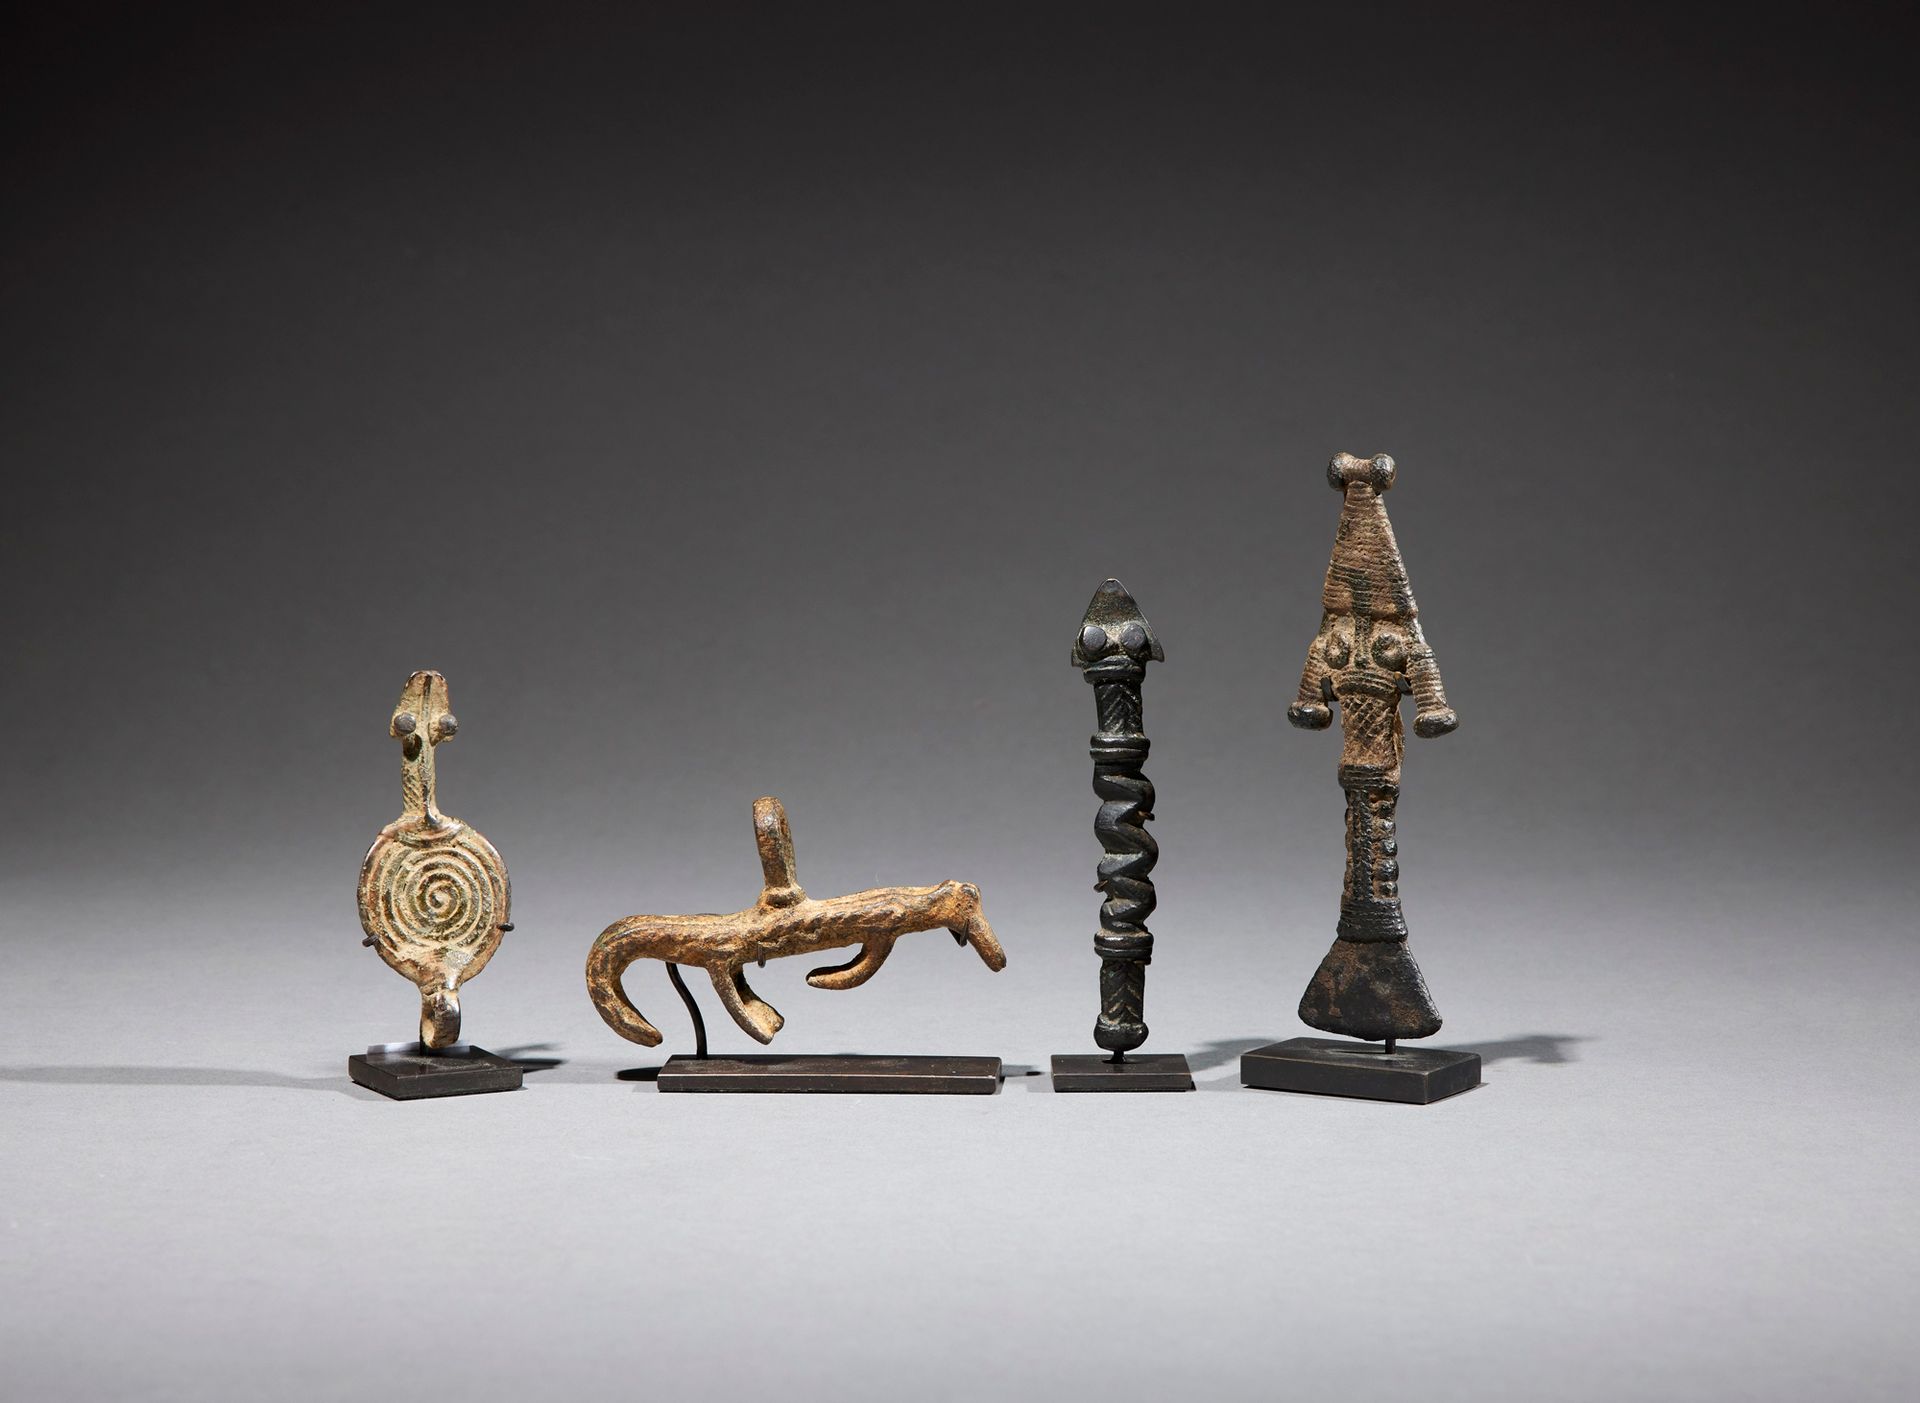 Null 四个甘氏文物

布基纳法索

铜质

H.7.3至11.3厘米



一套四件青铜甘氏文物，展示了一条四足动物和三条蛇，其中一条蛇是盘绕的。